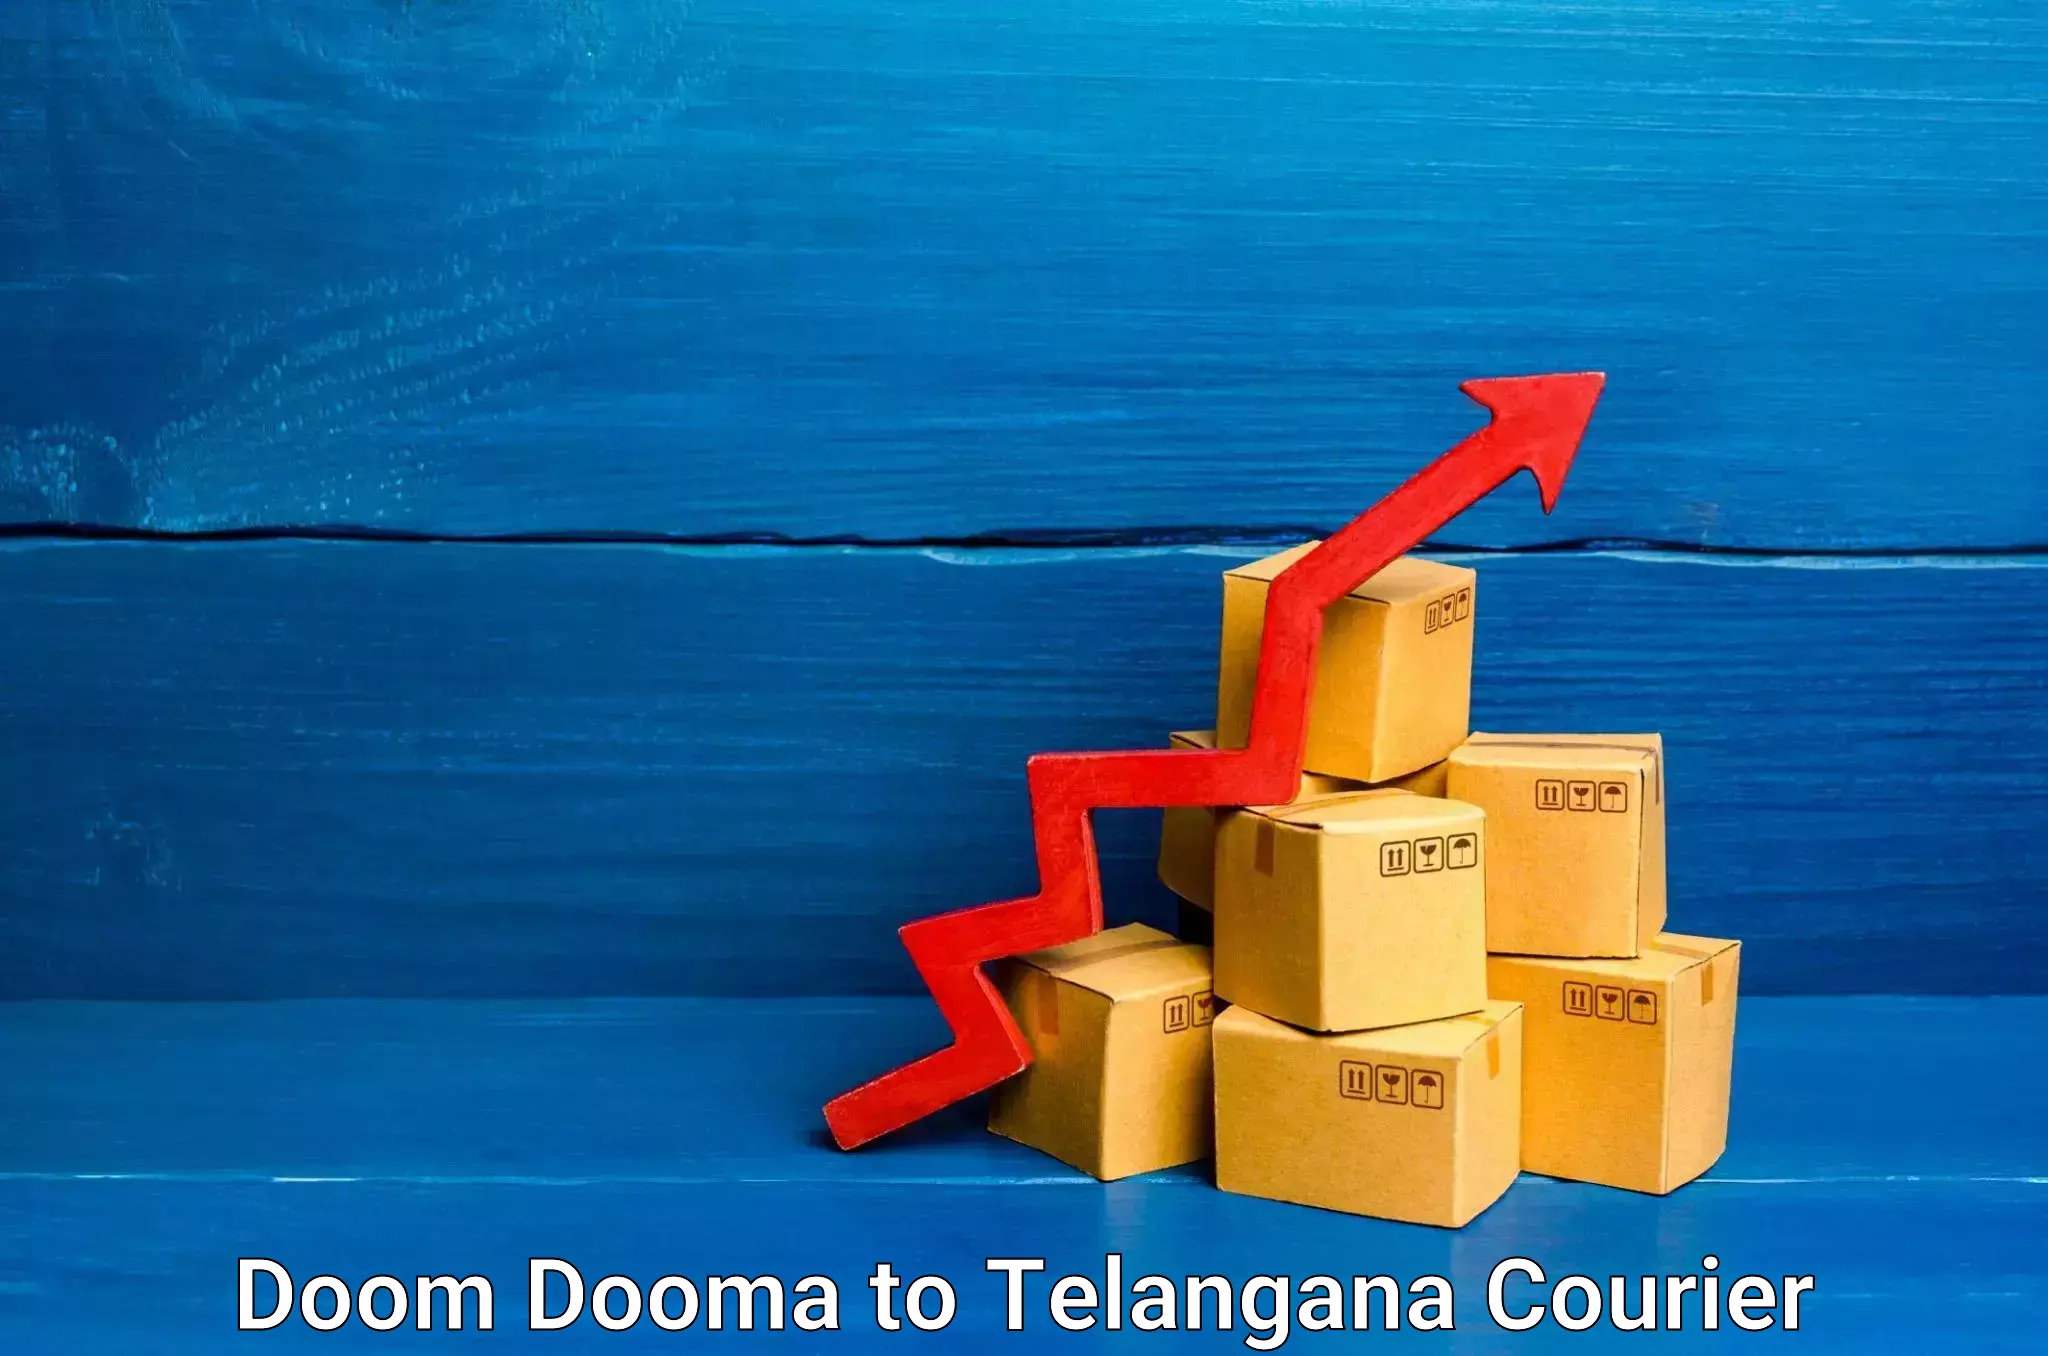 Express delivery capabilities Doom Dooma to Rayaparthi